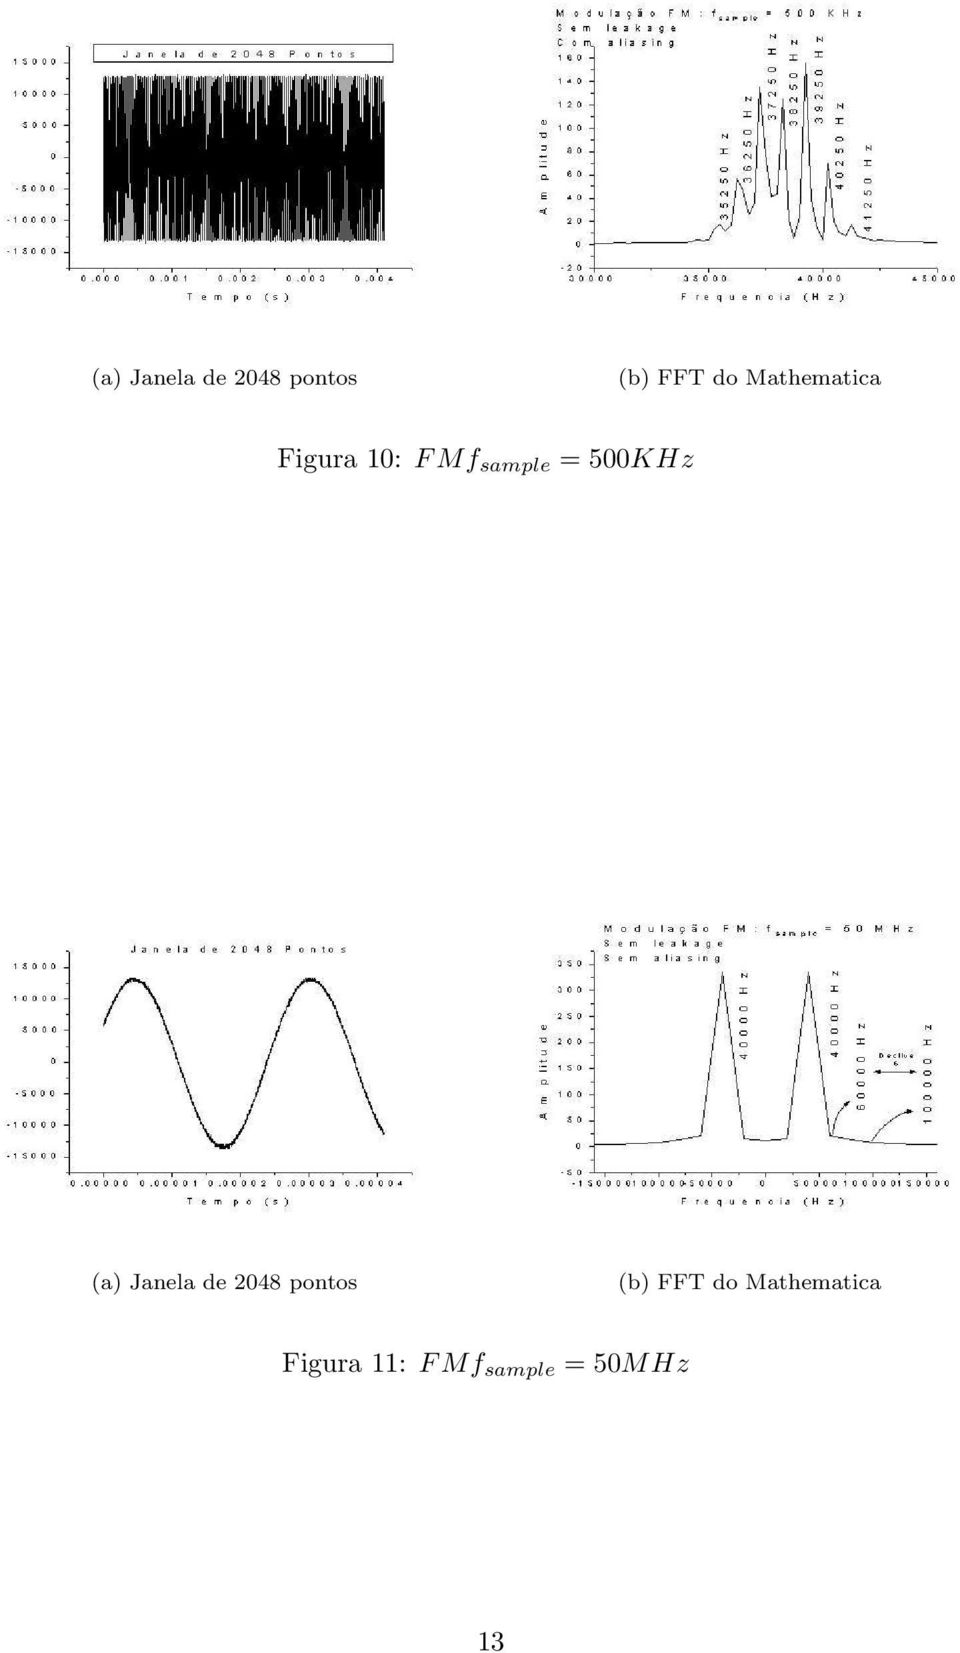 2048 pontos (b) FFT do Mathematica